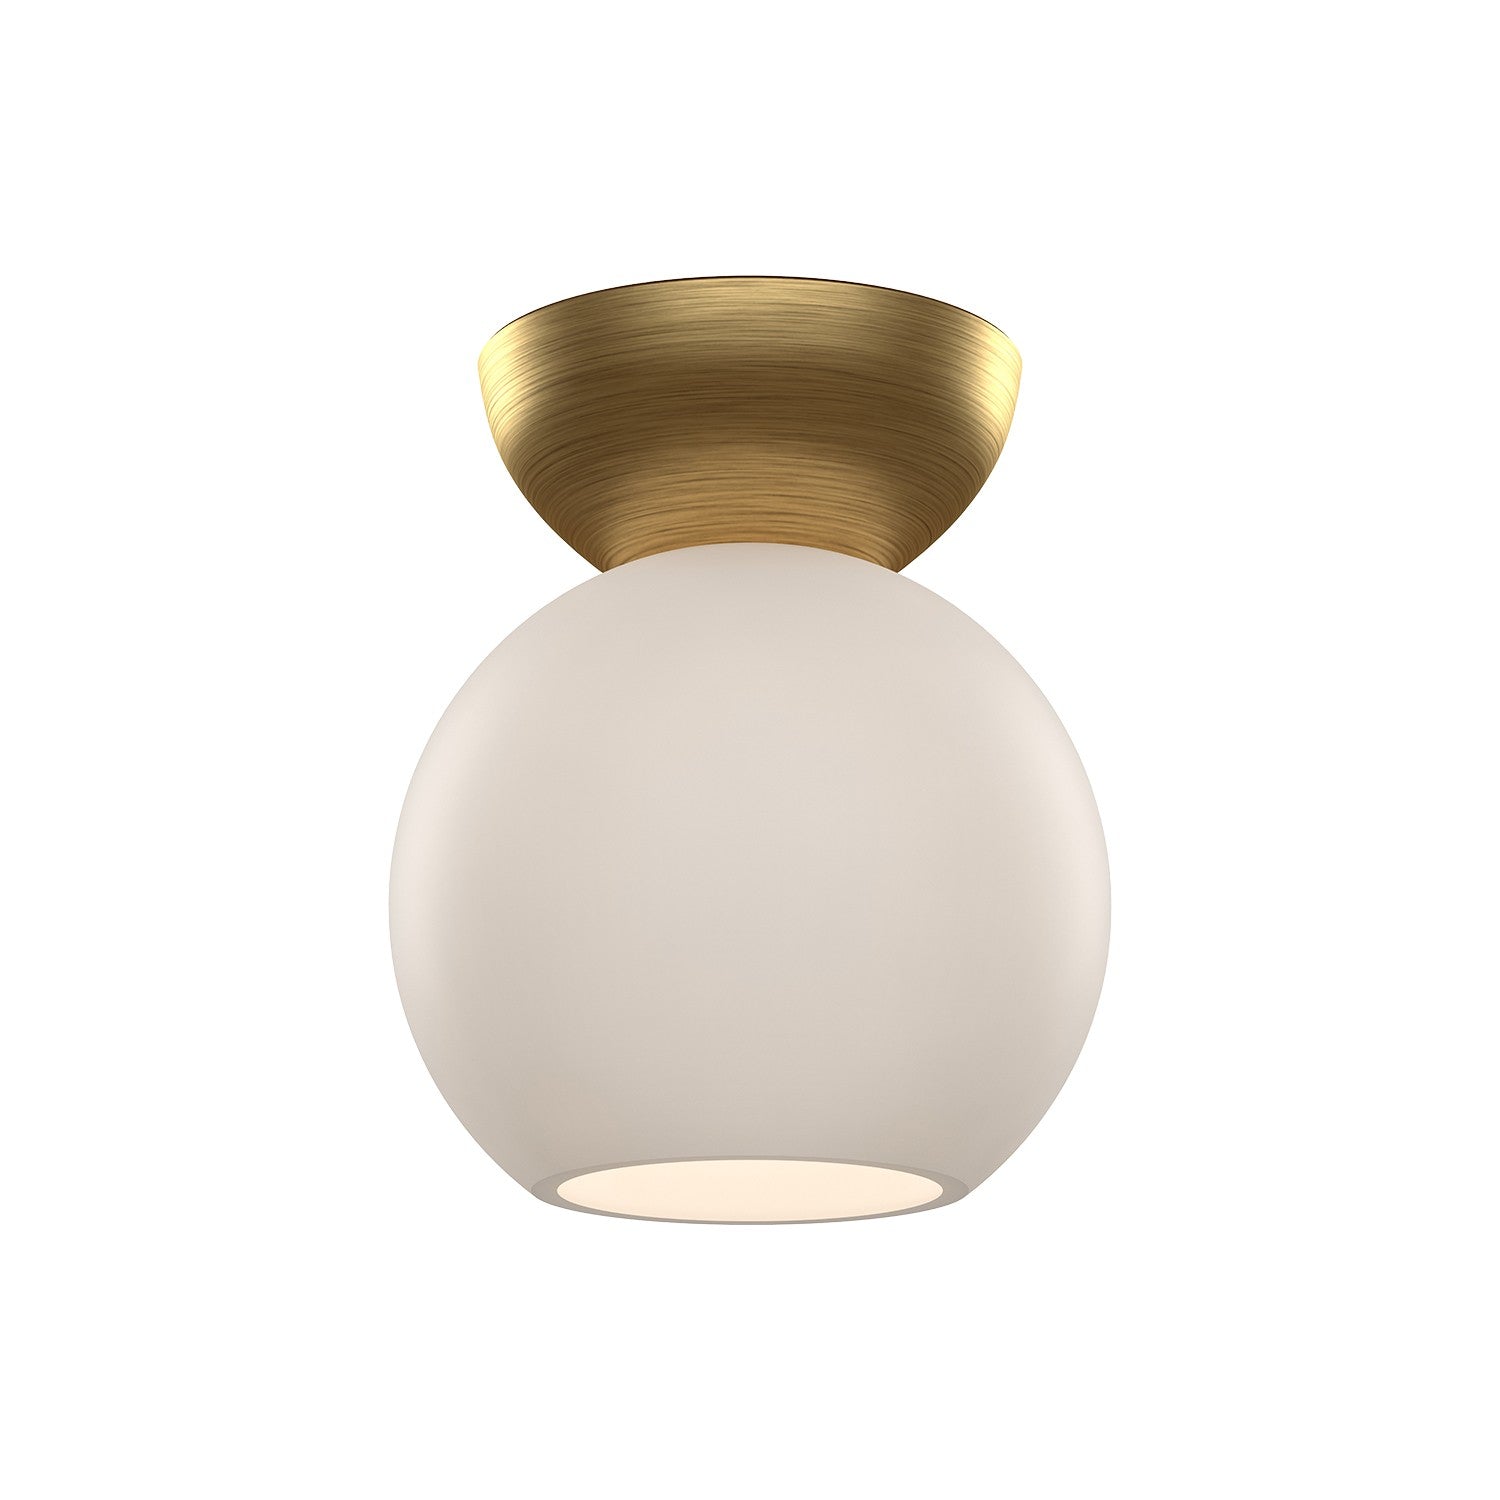 Kuzco Lighting - SF59706-BG/OP - One Light Semi-Flush Mount - Arcadia - Brushed Gold/Opal Glass